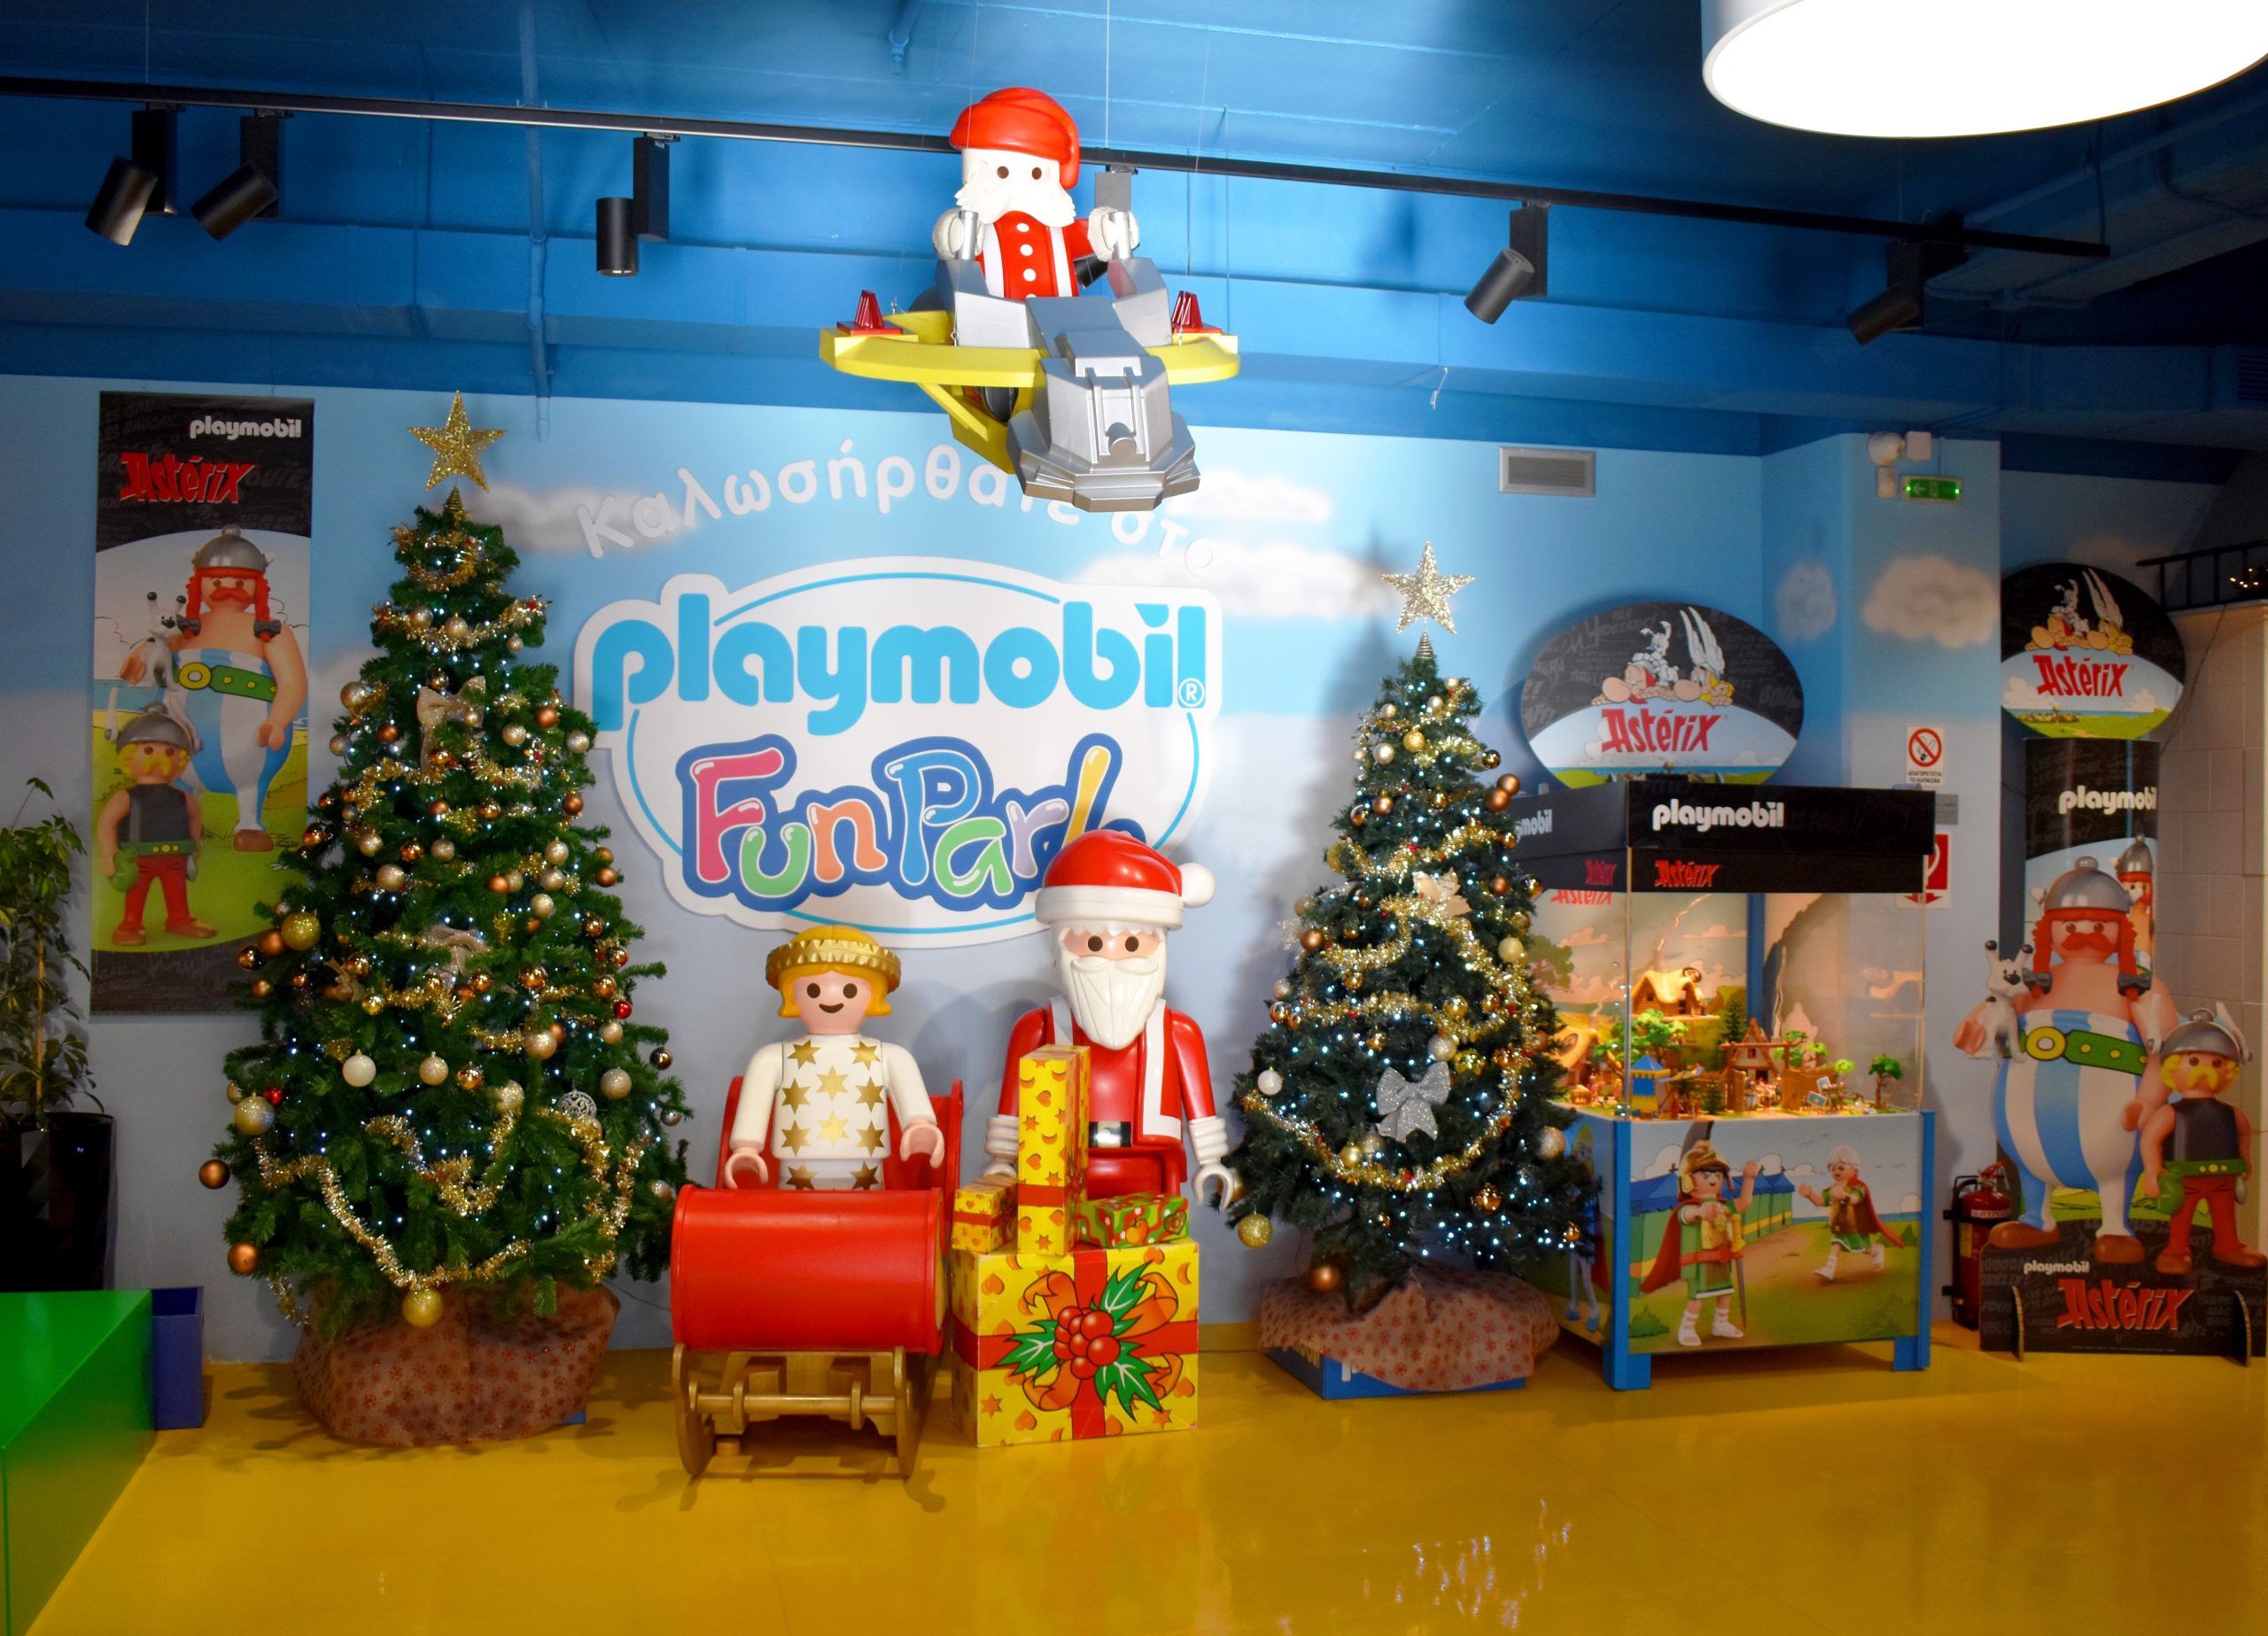 Ο ιδανικός παιδότοπος για το τέλειο playdate στις διακοπές των Χριστουγέννων!